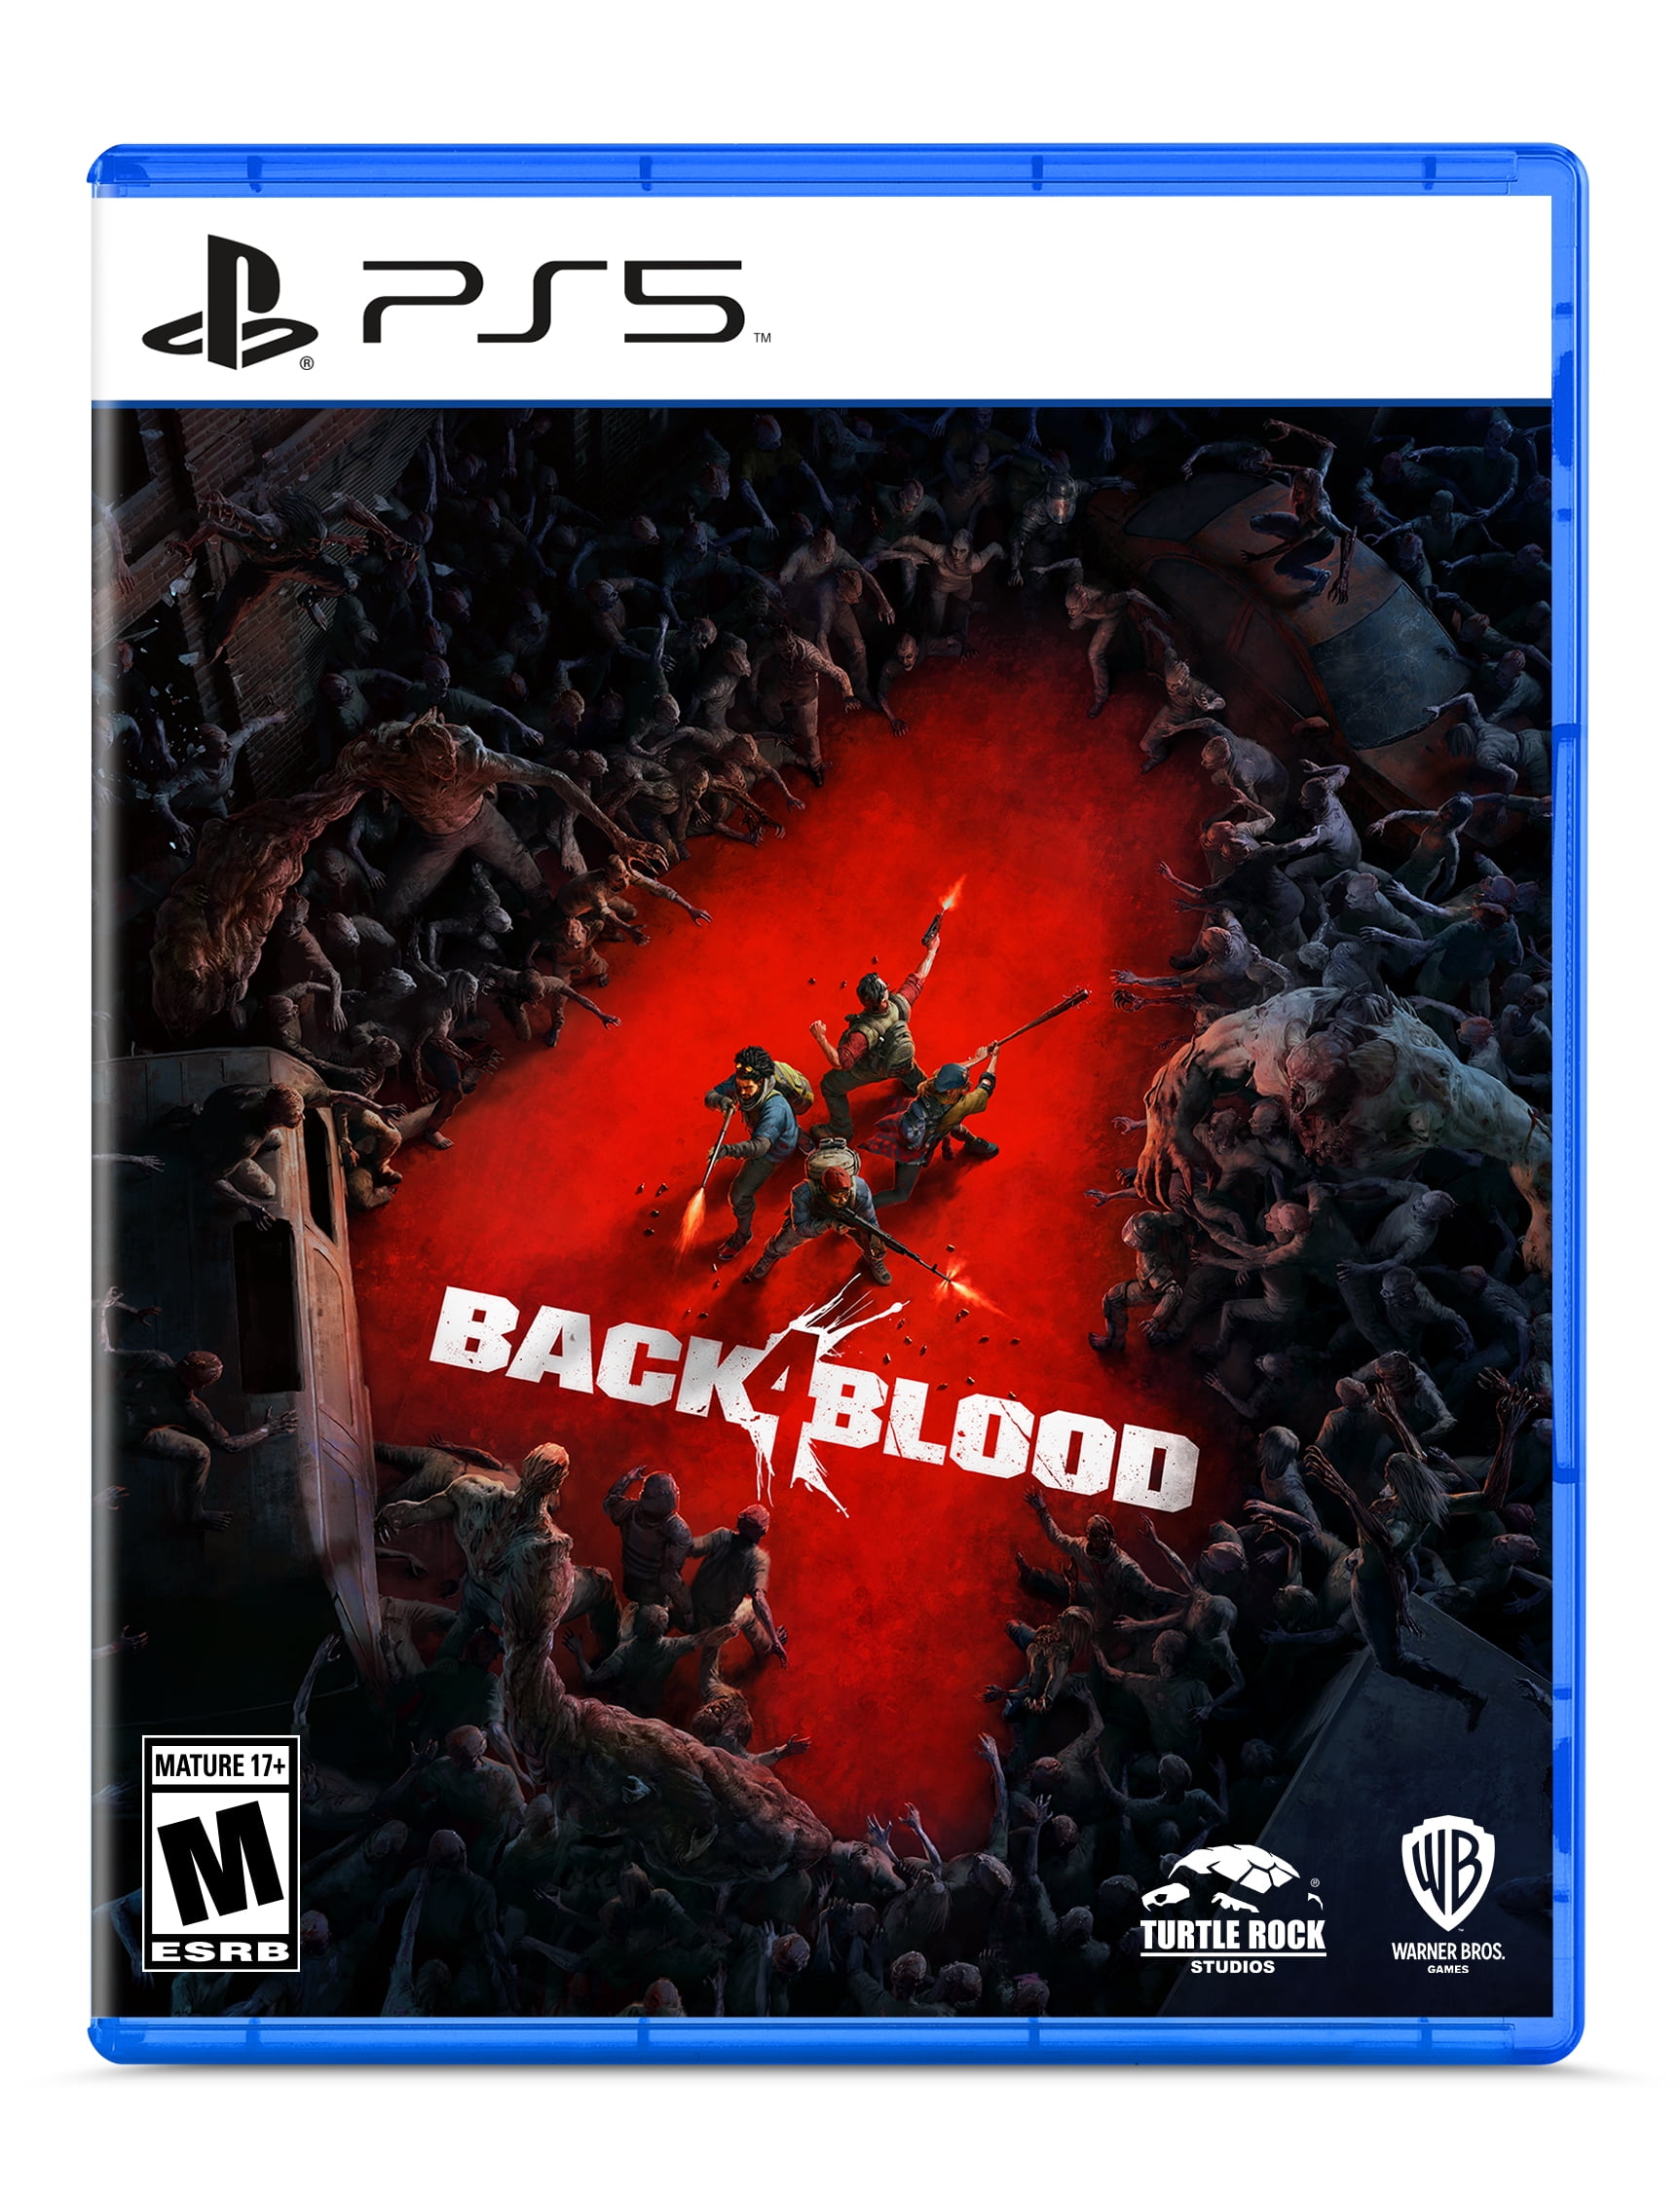 Bloodbox игра. Black 4 Blood игра ps4. Back 4 Blood игра ps4 Special Edition. Back 4 Blood ps4 обложка задняя. Back 4 Blood Xbox Series x.